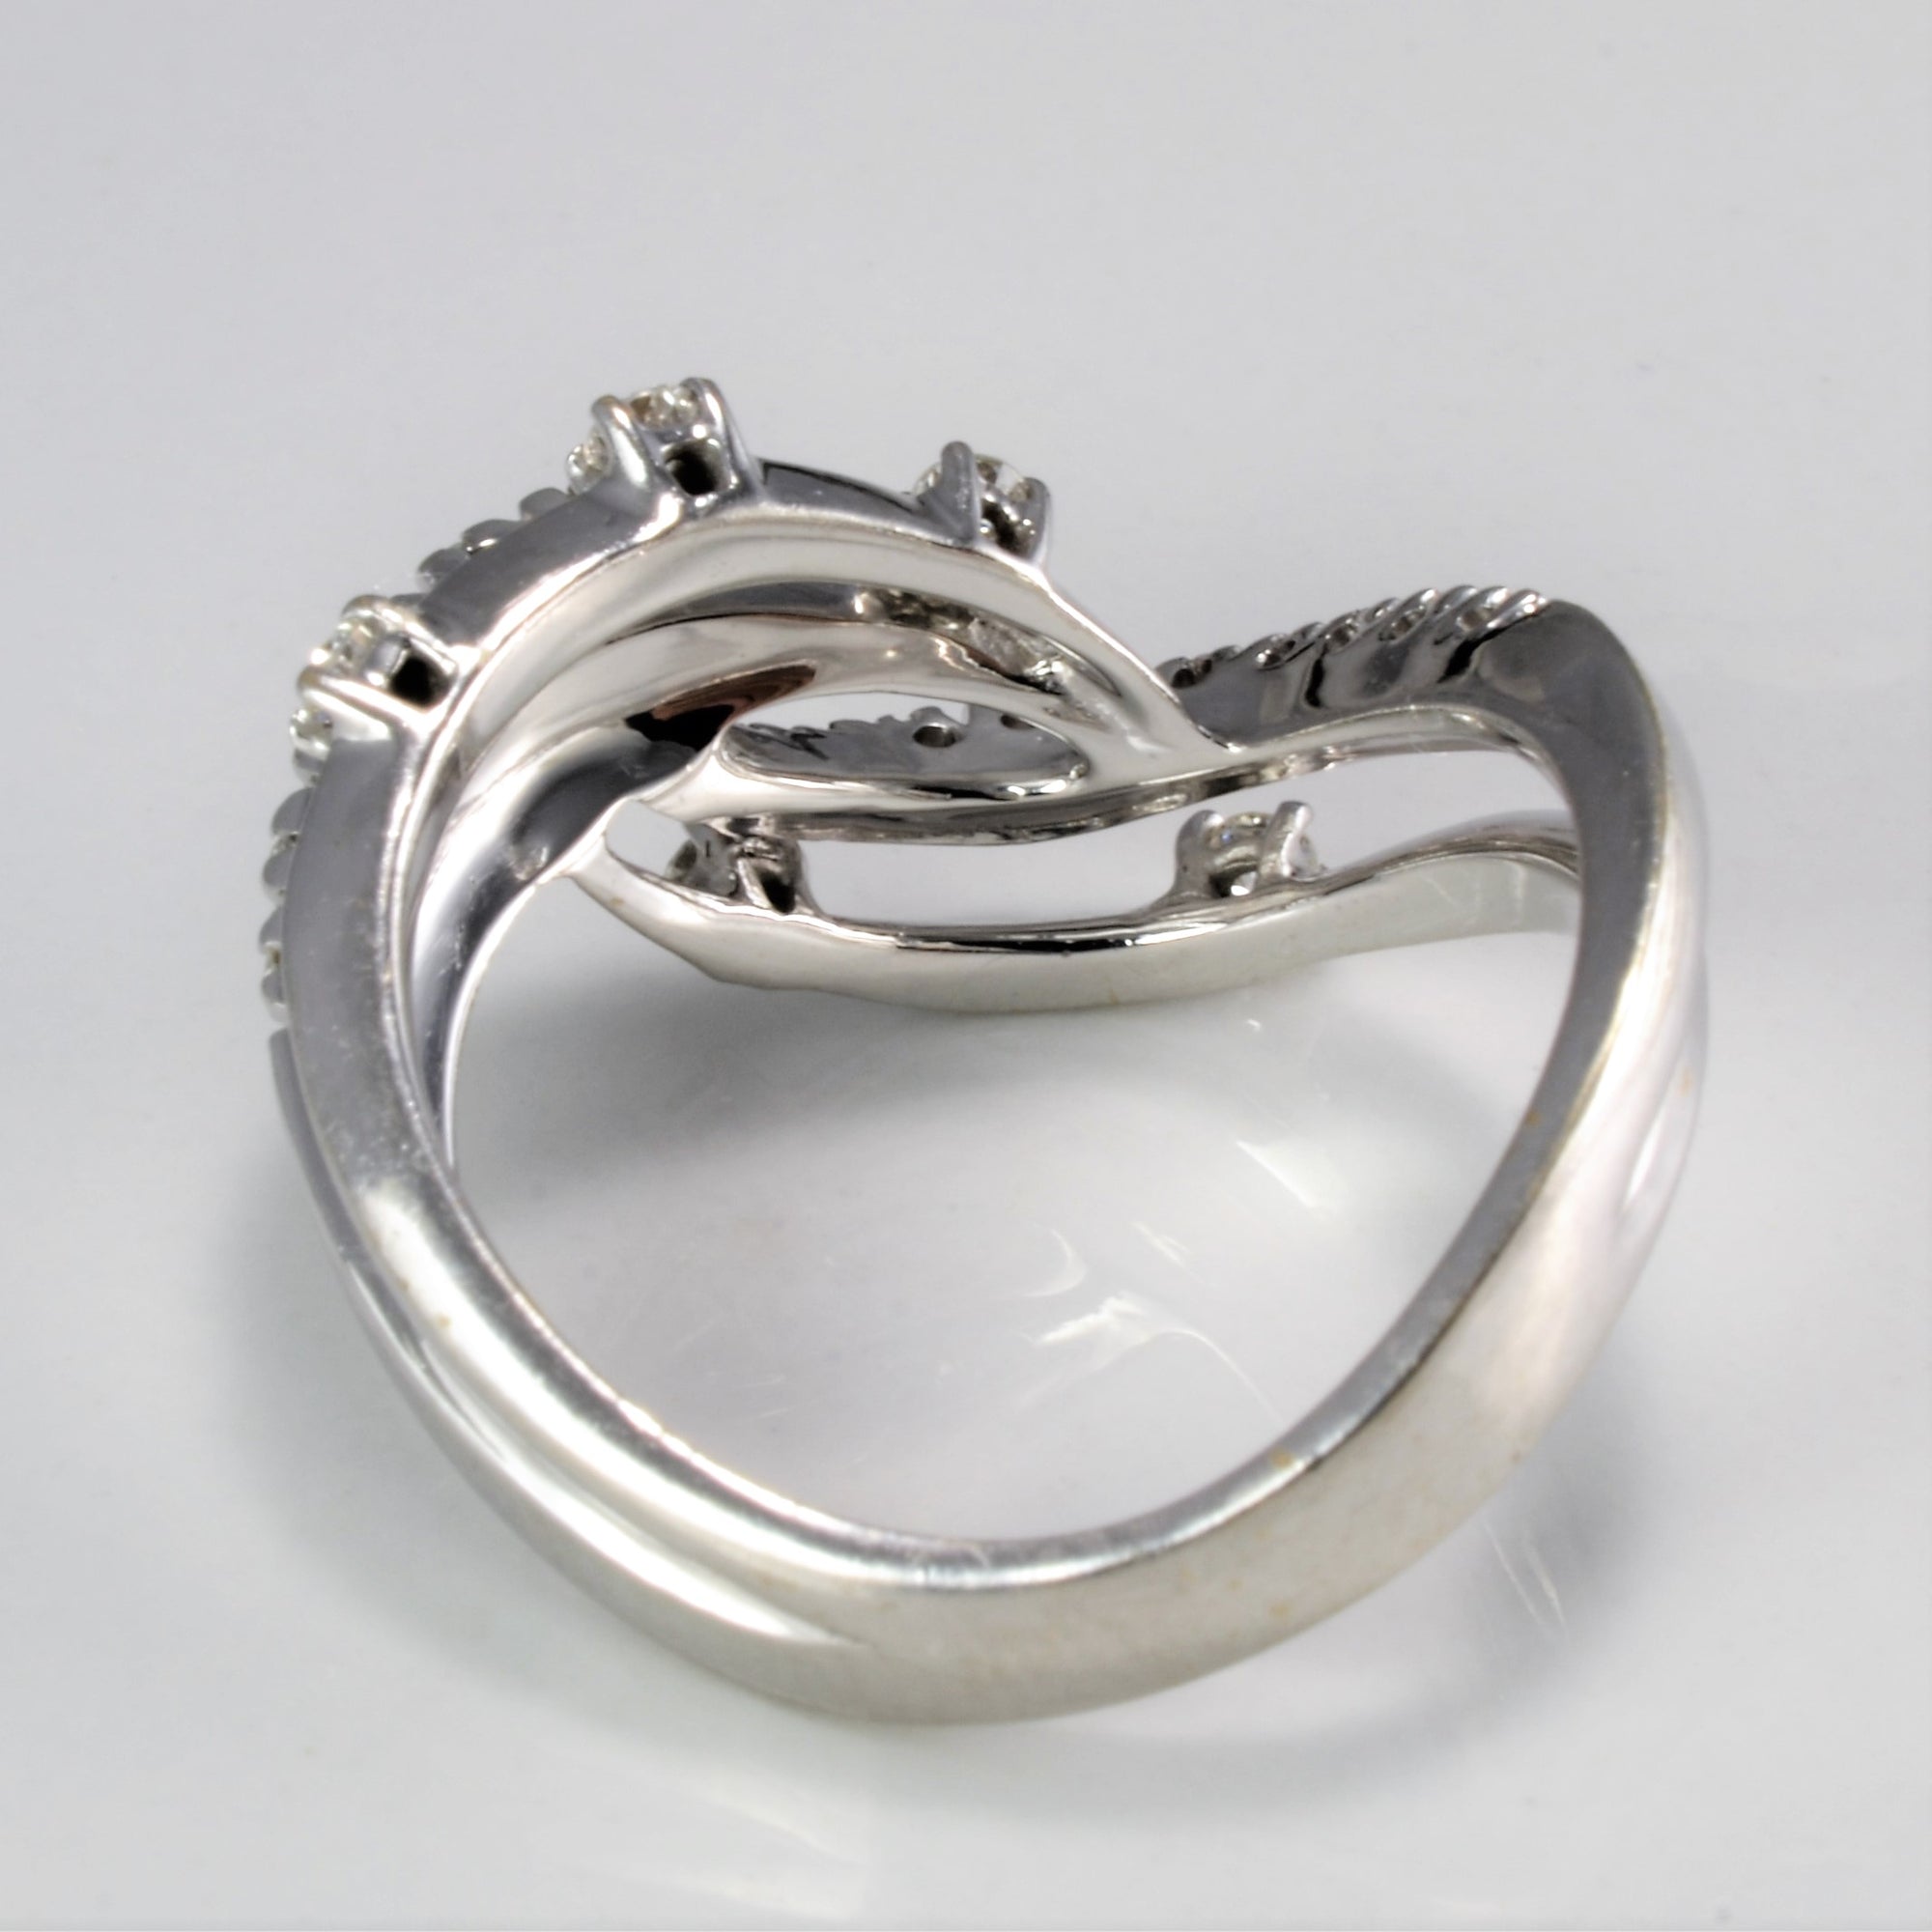 Chevron Pave Diamond Ladies Ring | 0.29 ctw, SZ 7 |